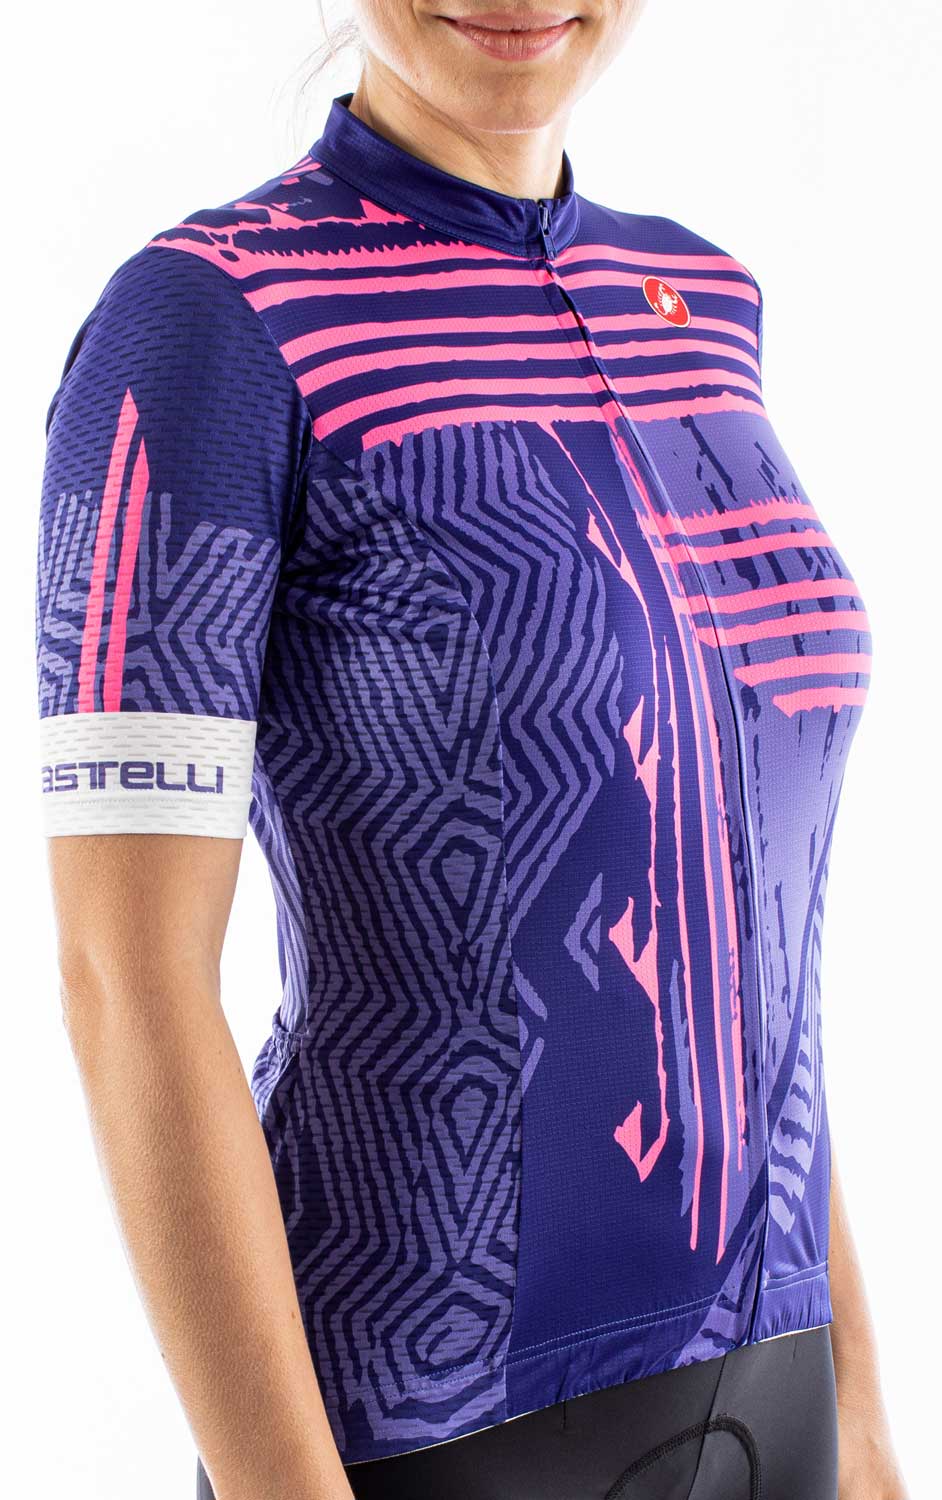 Women’s cycling jersey